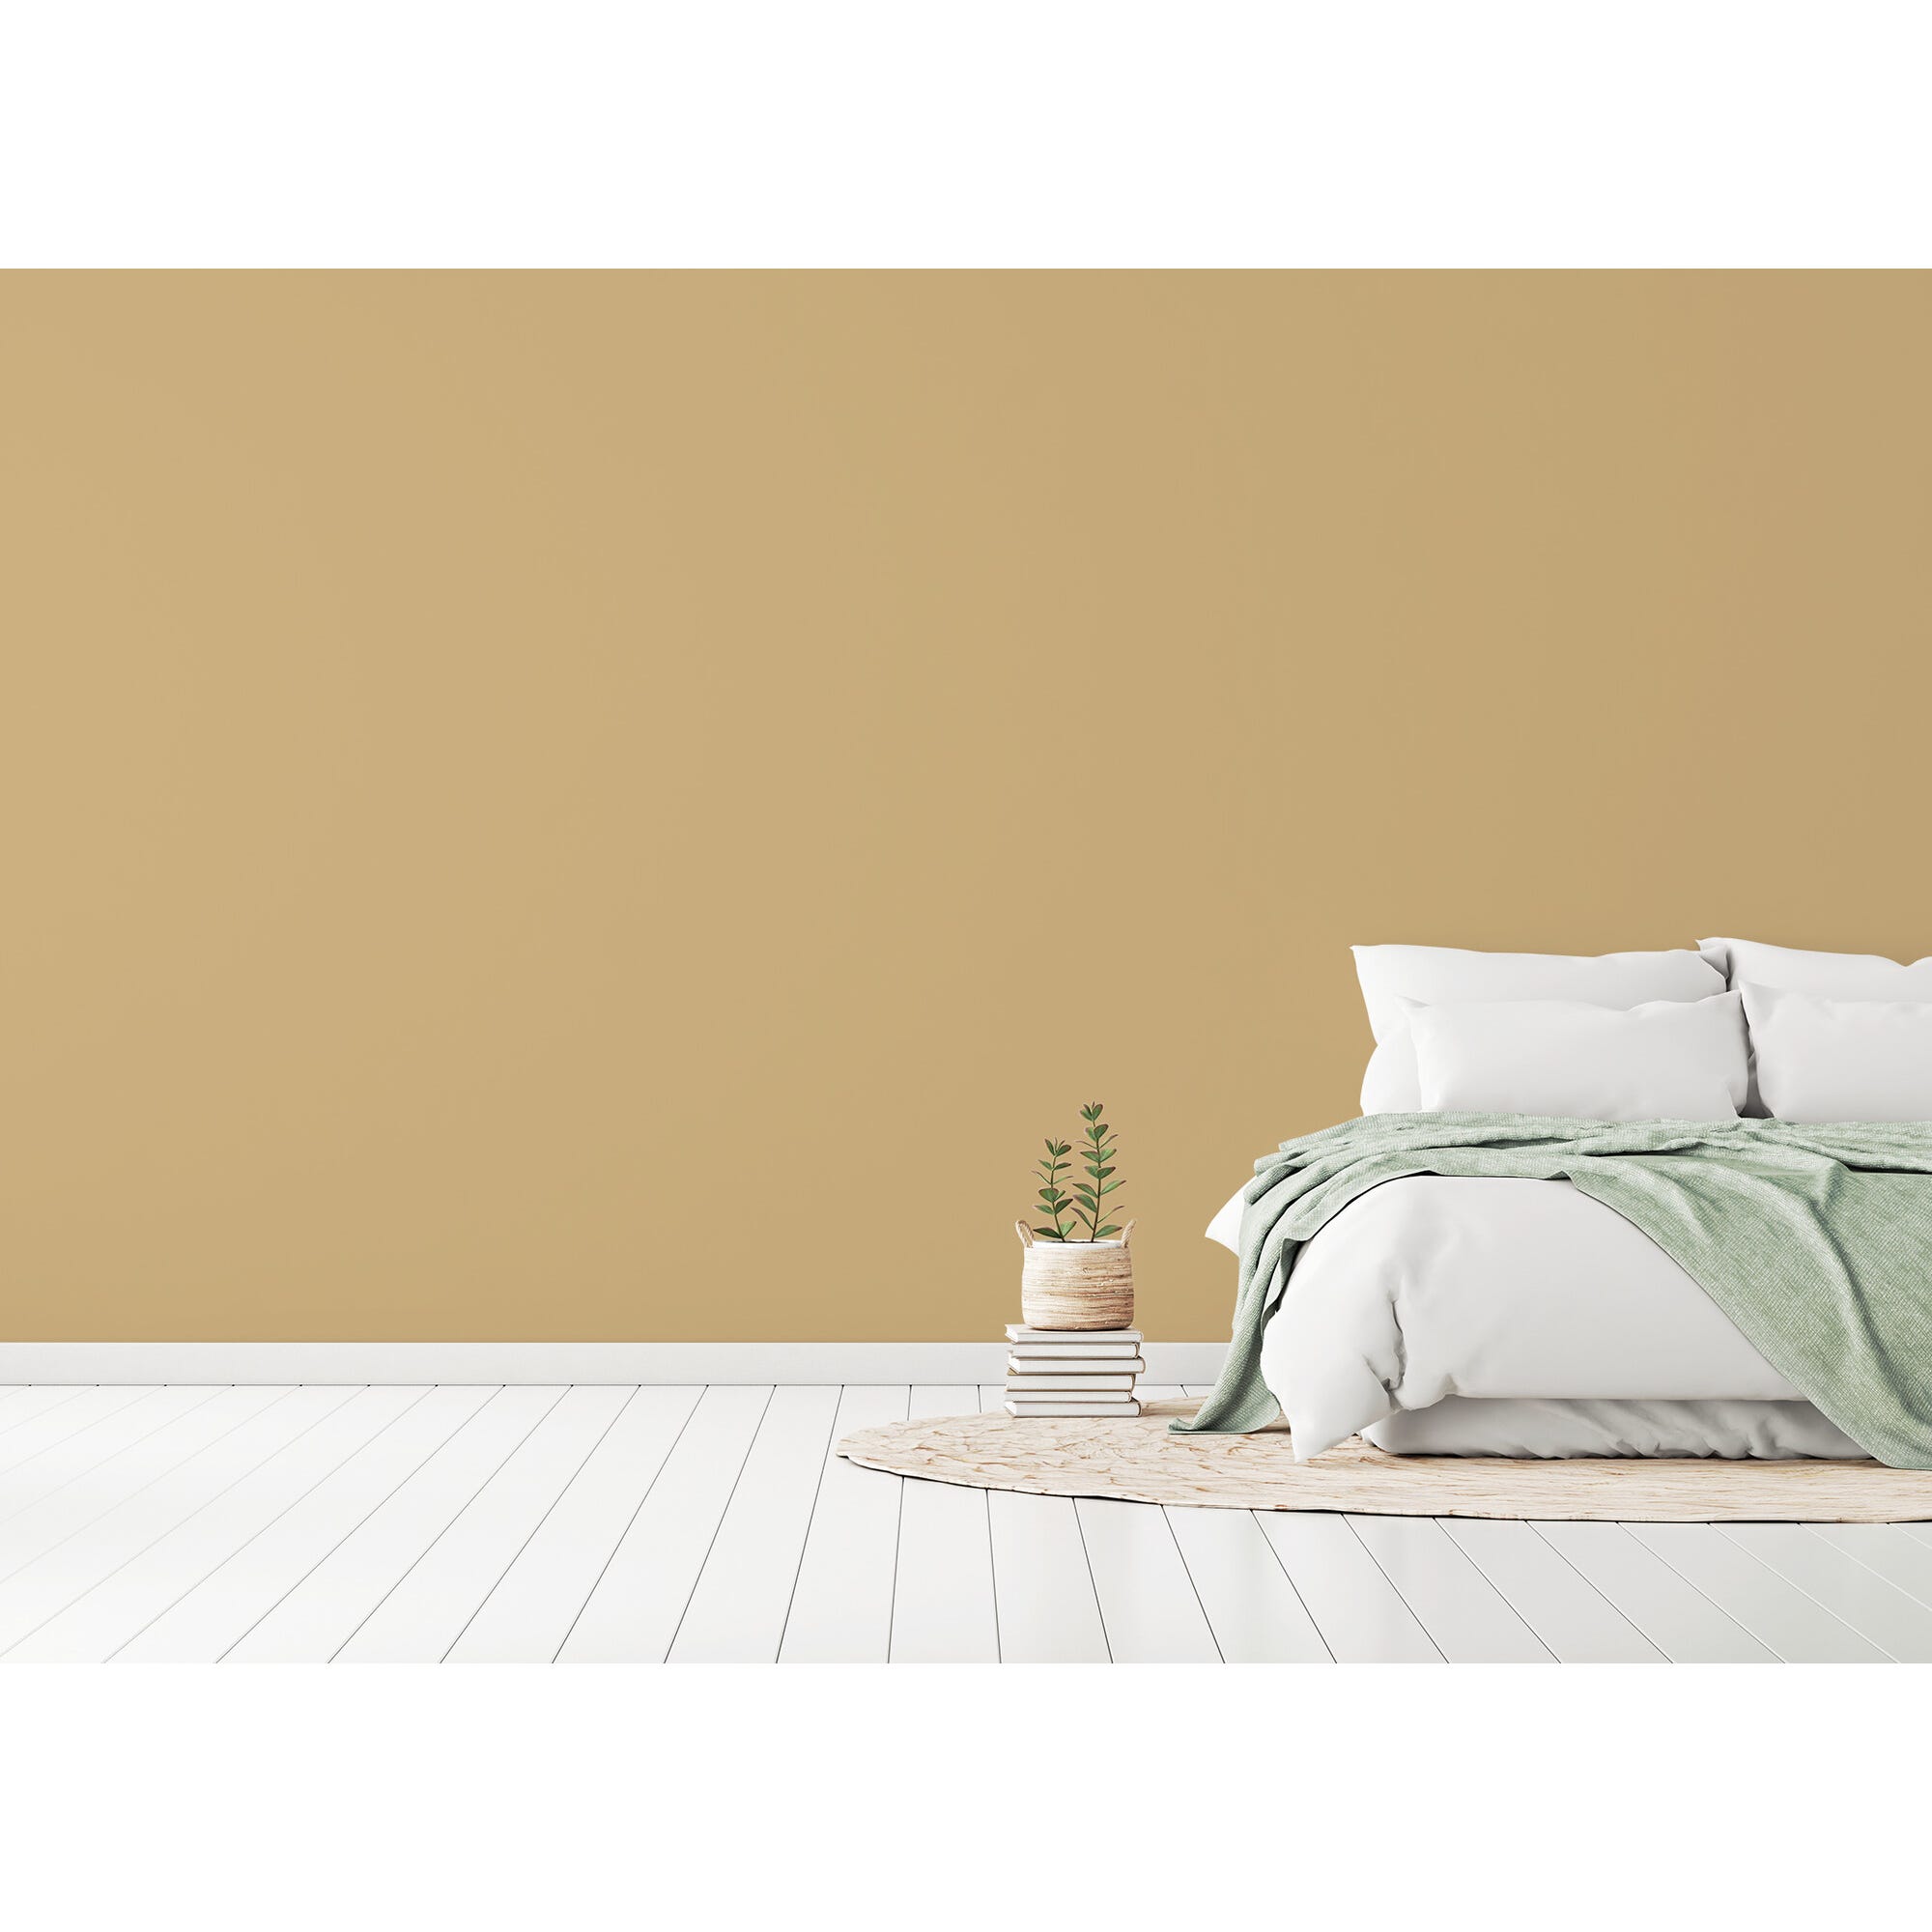 Peinture intérieure velours beige tenda teintée en machine 3 L Altea - GAUTHIER 5